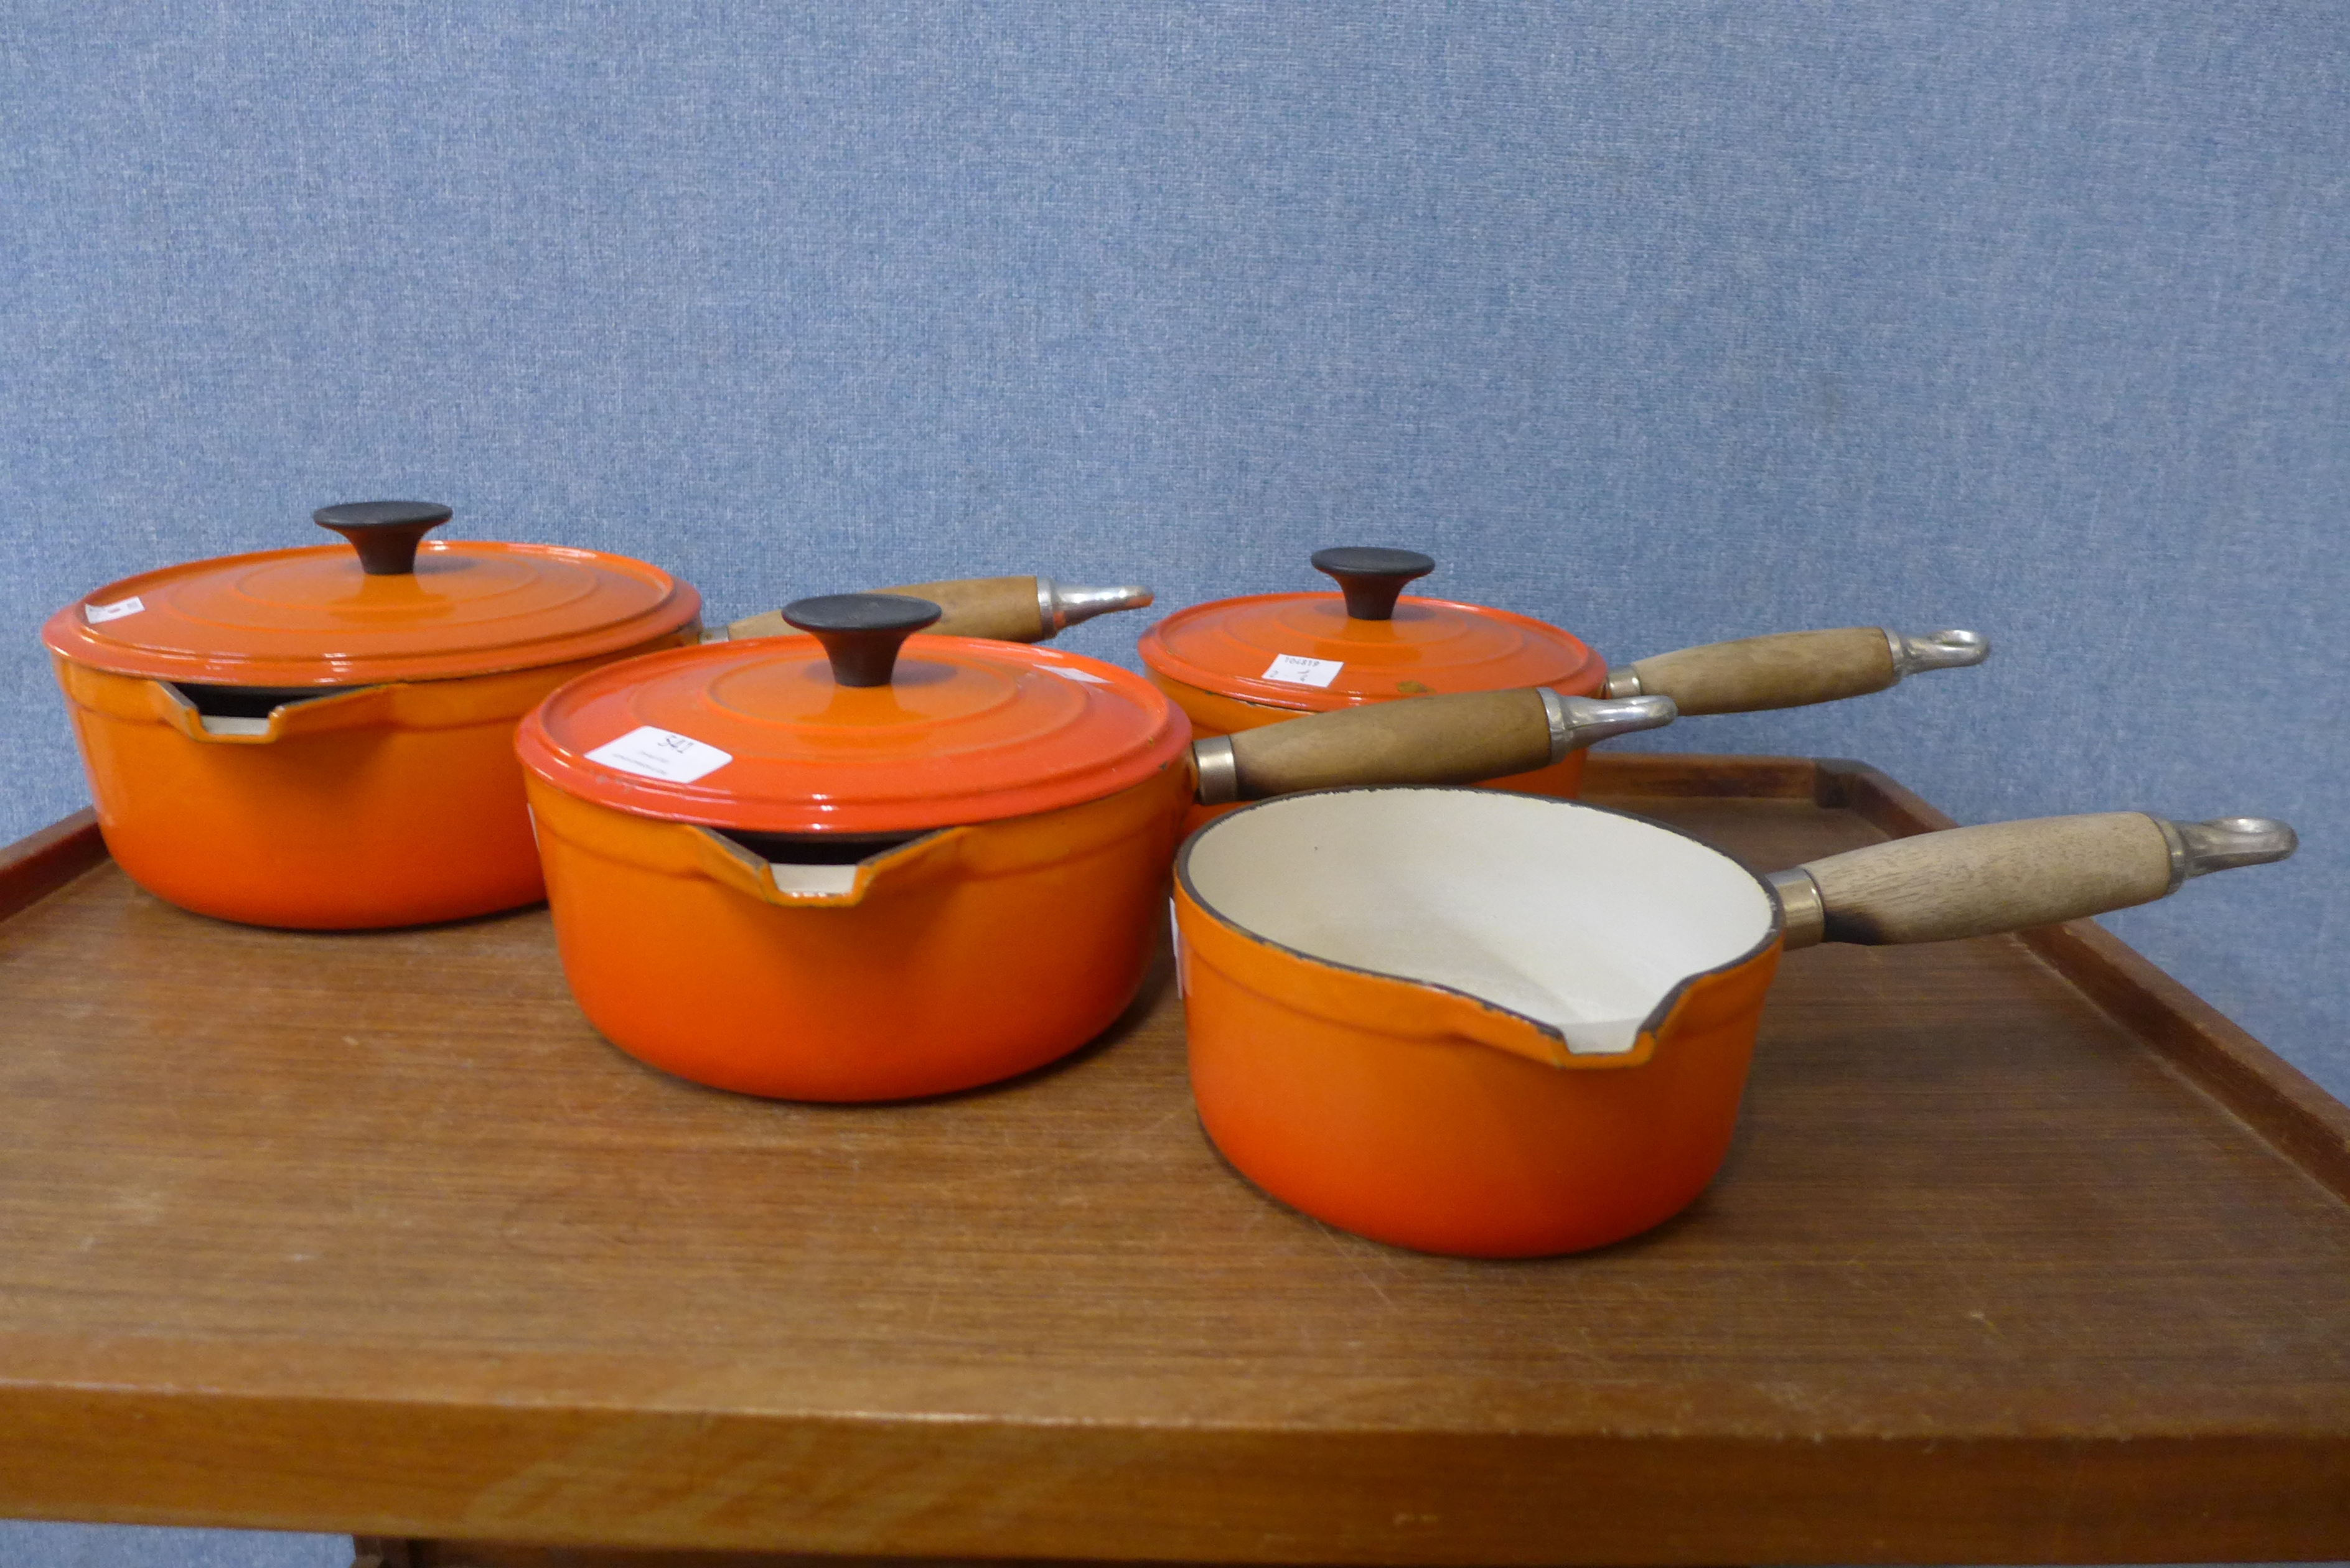 A set of four French Cousances cast iron and enamelled saucepans